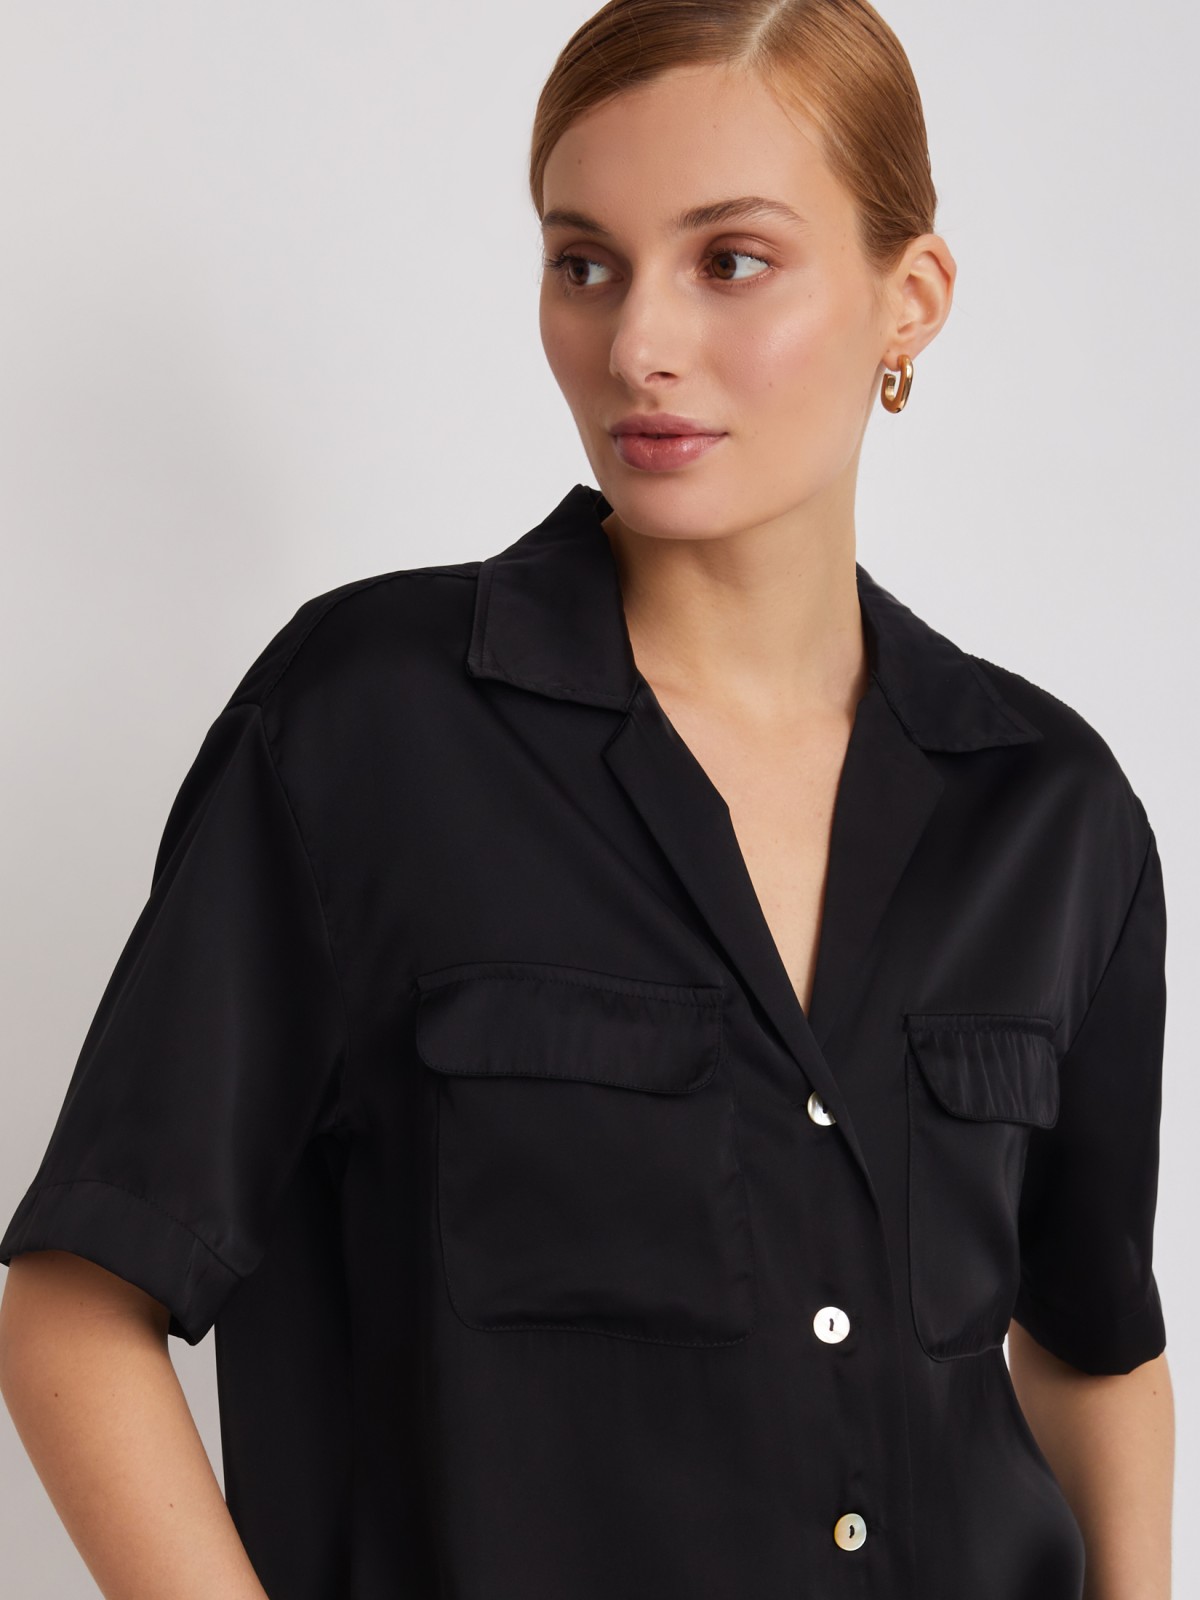 Блузка с короткими рукавами zolla 22325127Y061, цвет черный, размер XS - фото 4